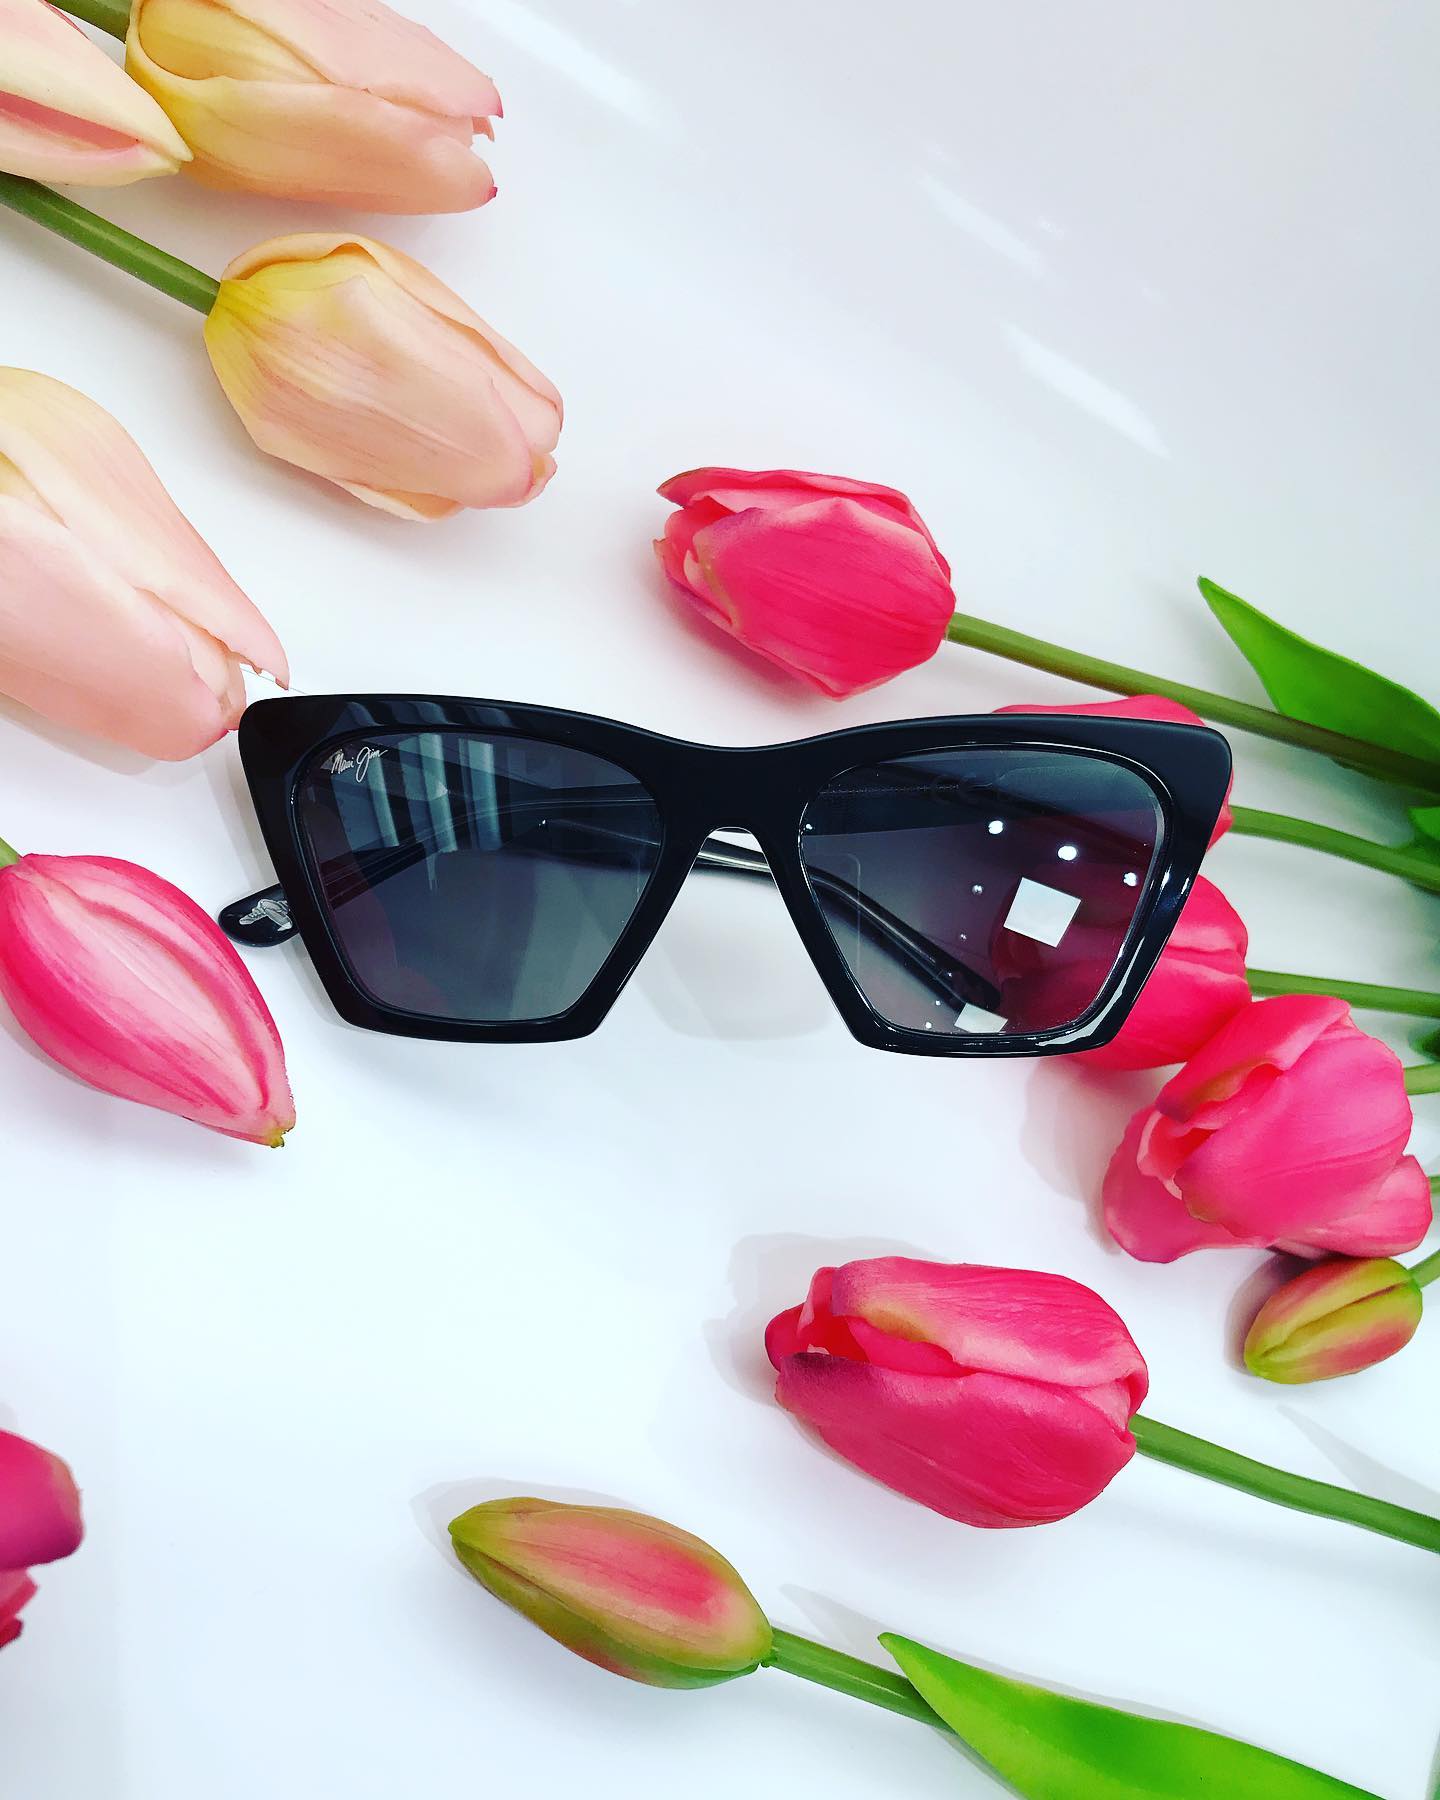 Der Frühling ist da🦋💐 und somit auch unseren schönen neuen Sonnenbrillen 😎

#brille #brillenbell #sonnenbrille #sonne...